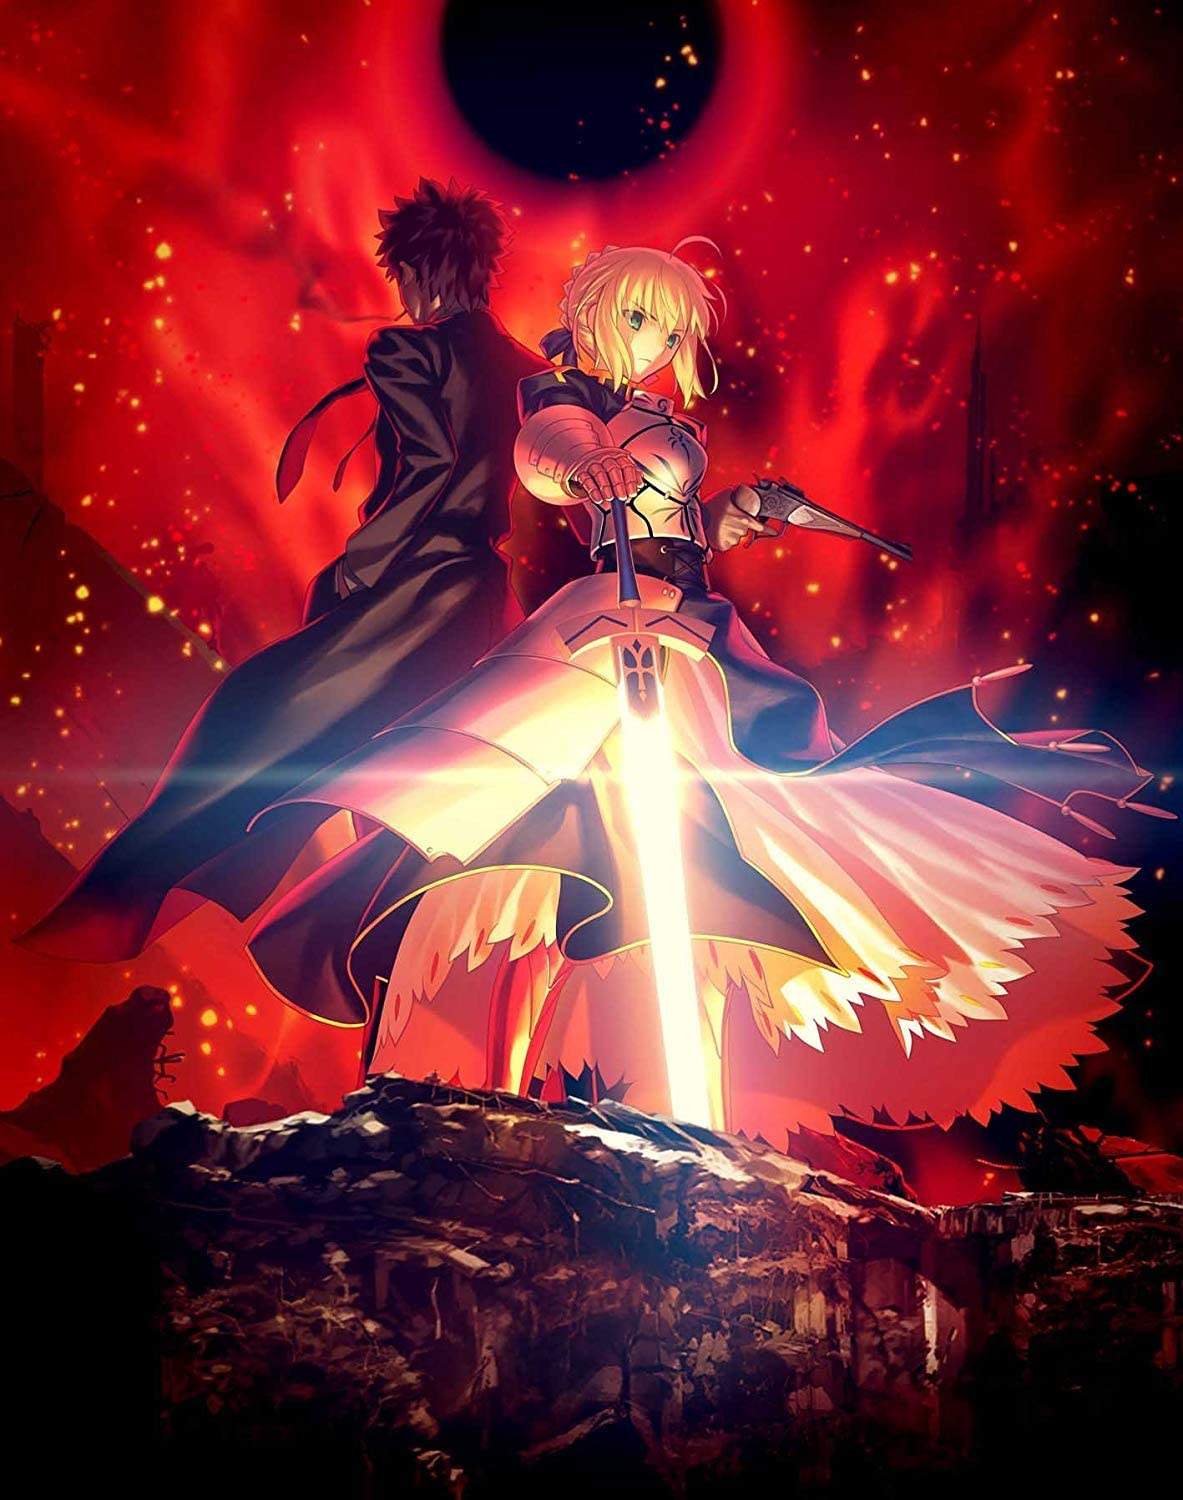 Fate/Zero第1期のイラスト・画像まとめ